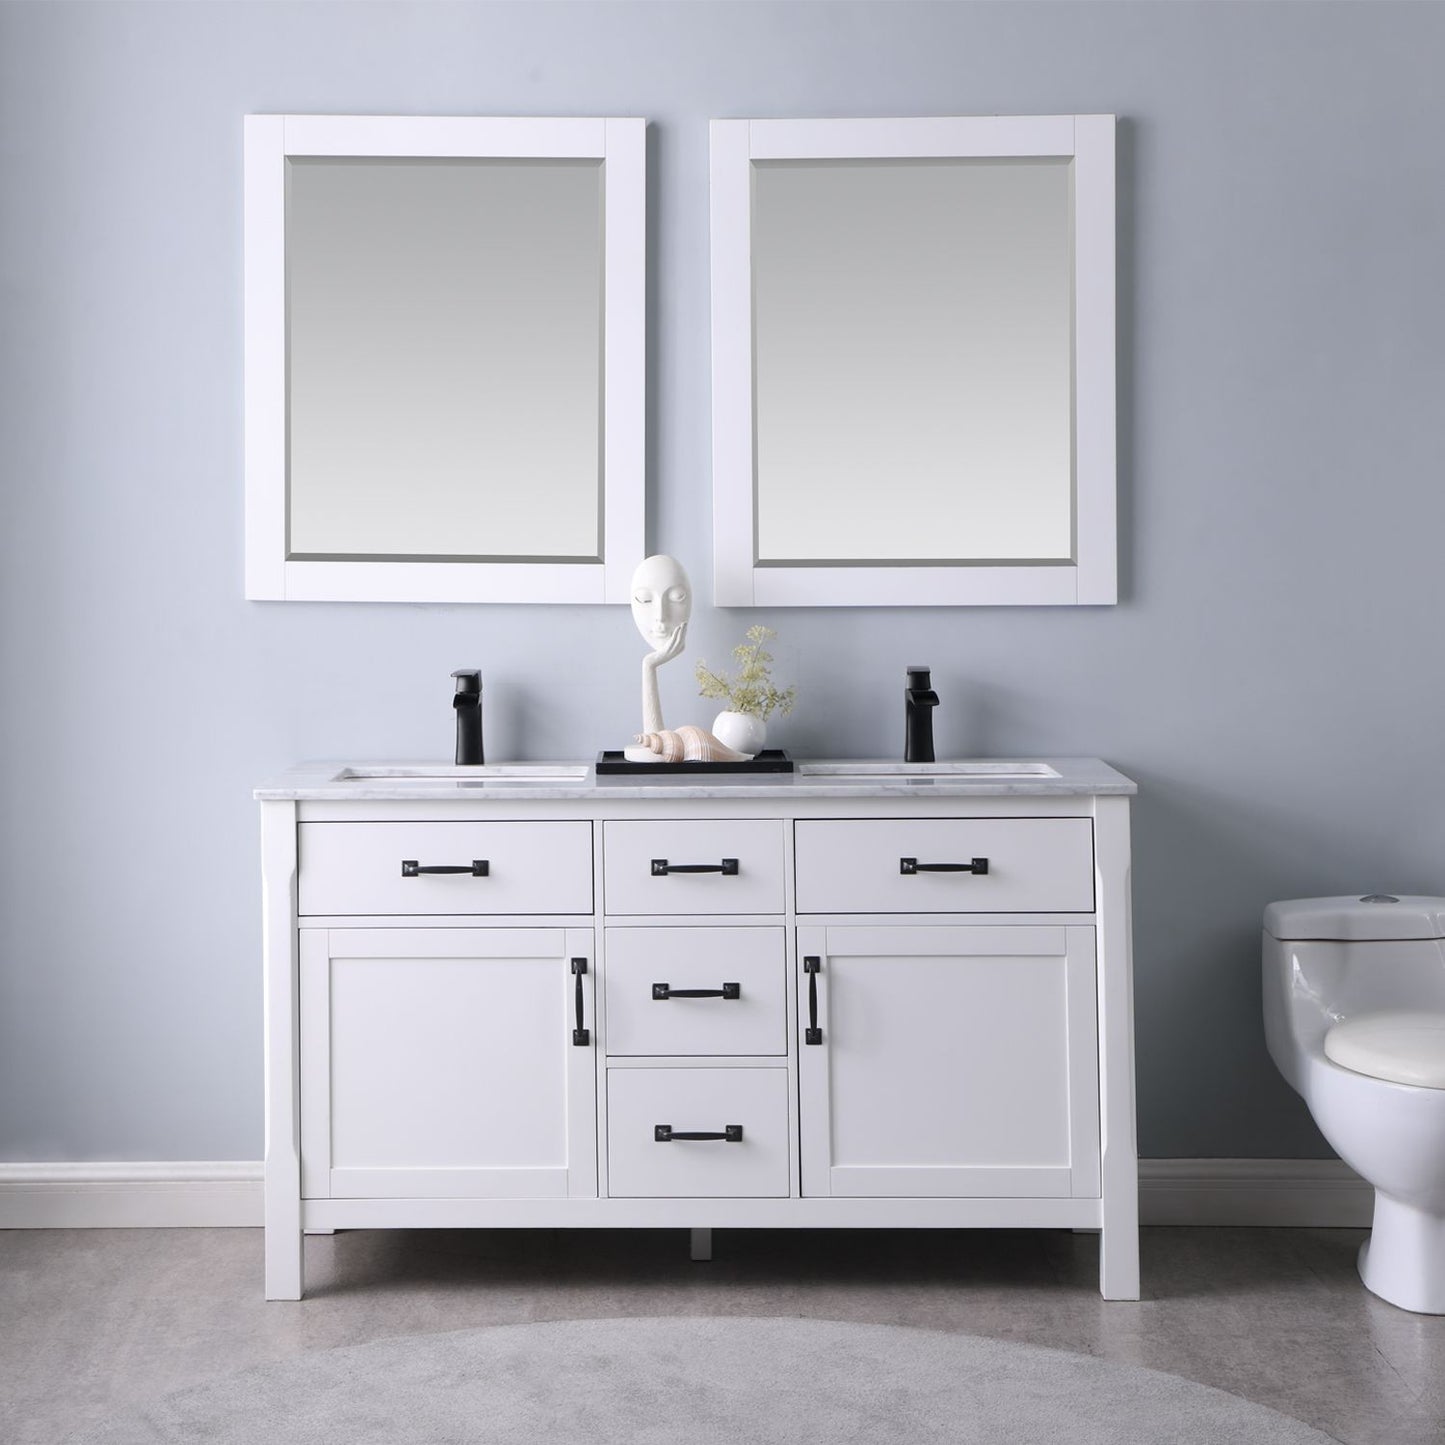 Altair Maribella 60" Double Bathroom Vanity Set Countertop with Mirror - Luxe Bathroom Vanities